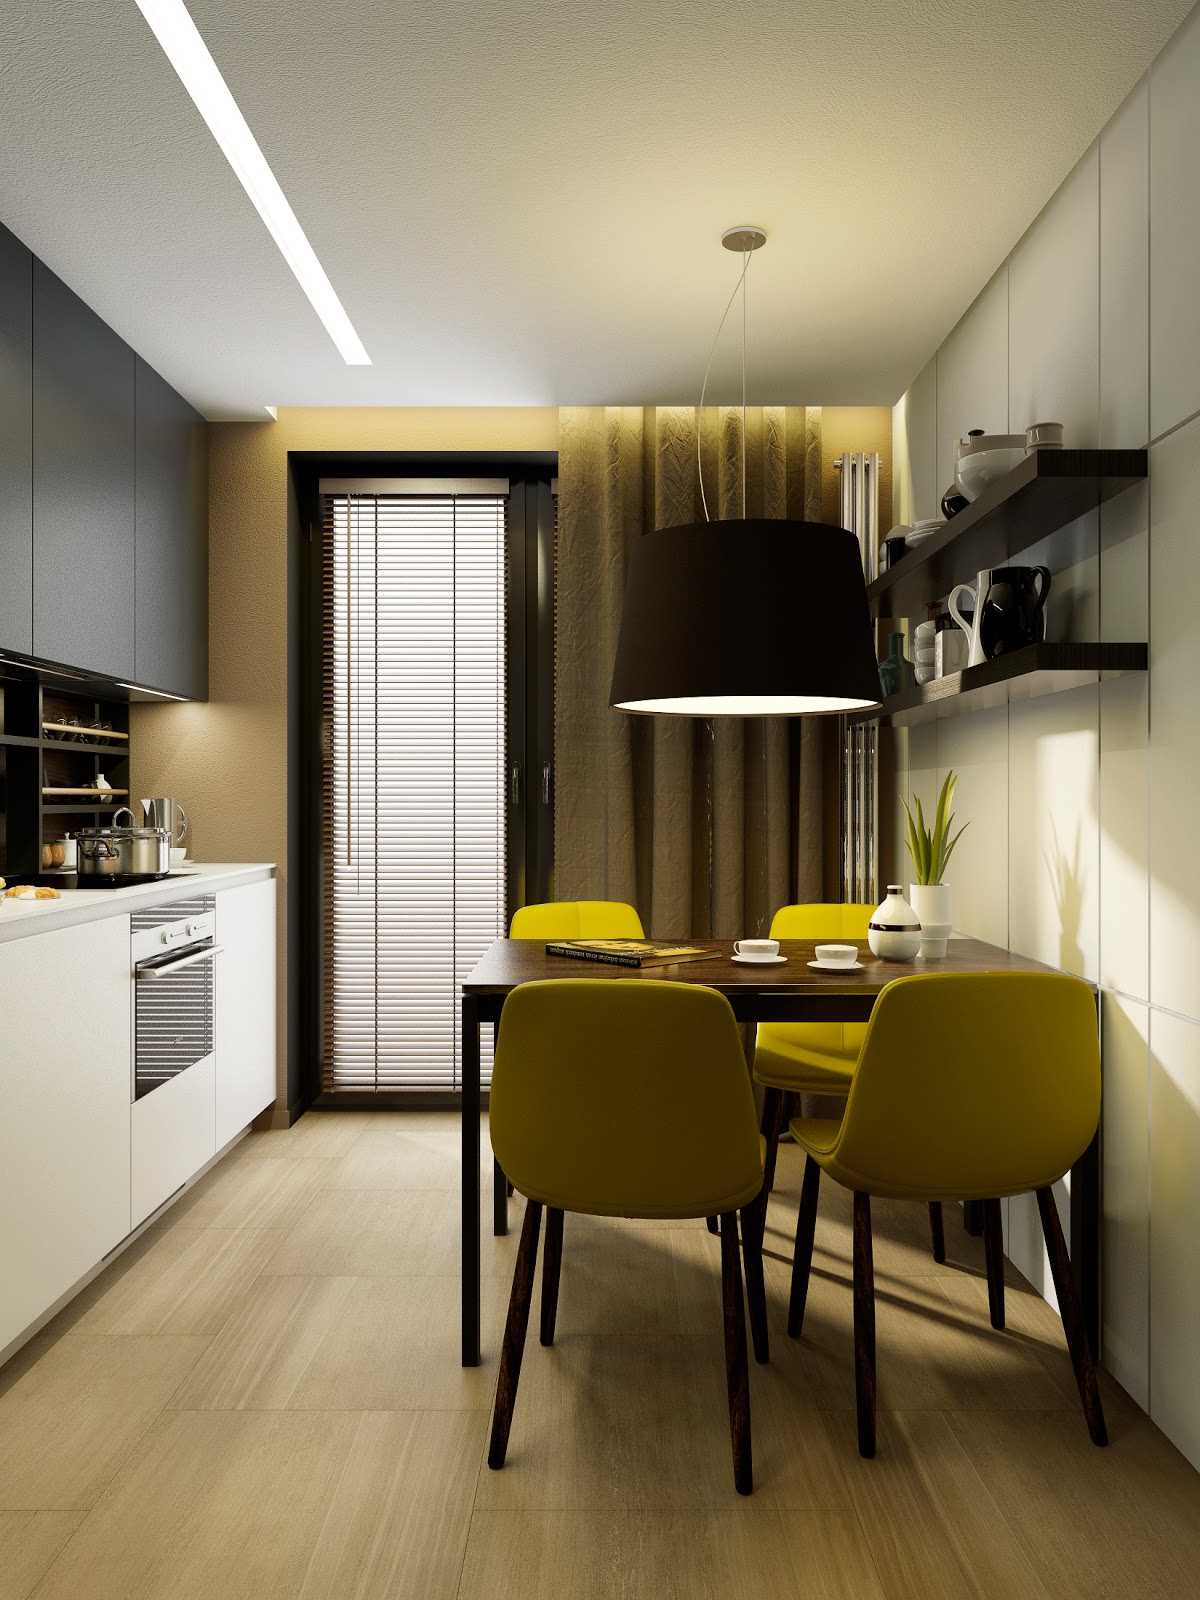 the idea of ​​an unusual kitchen decor 9 sq.m